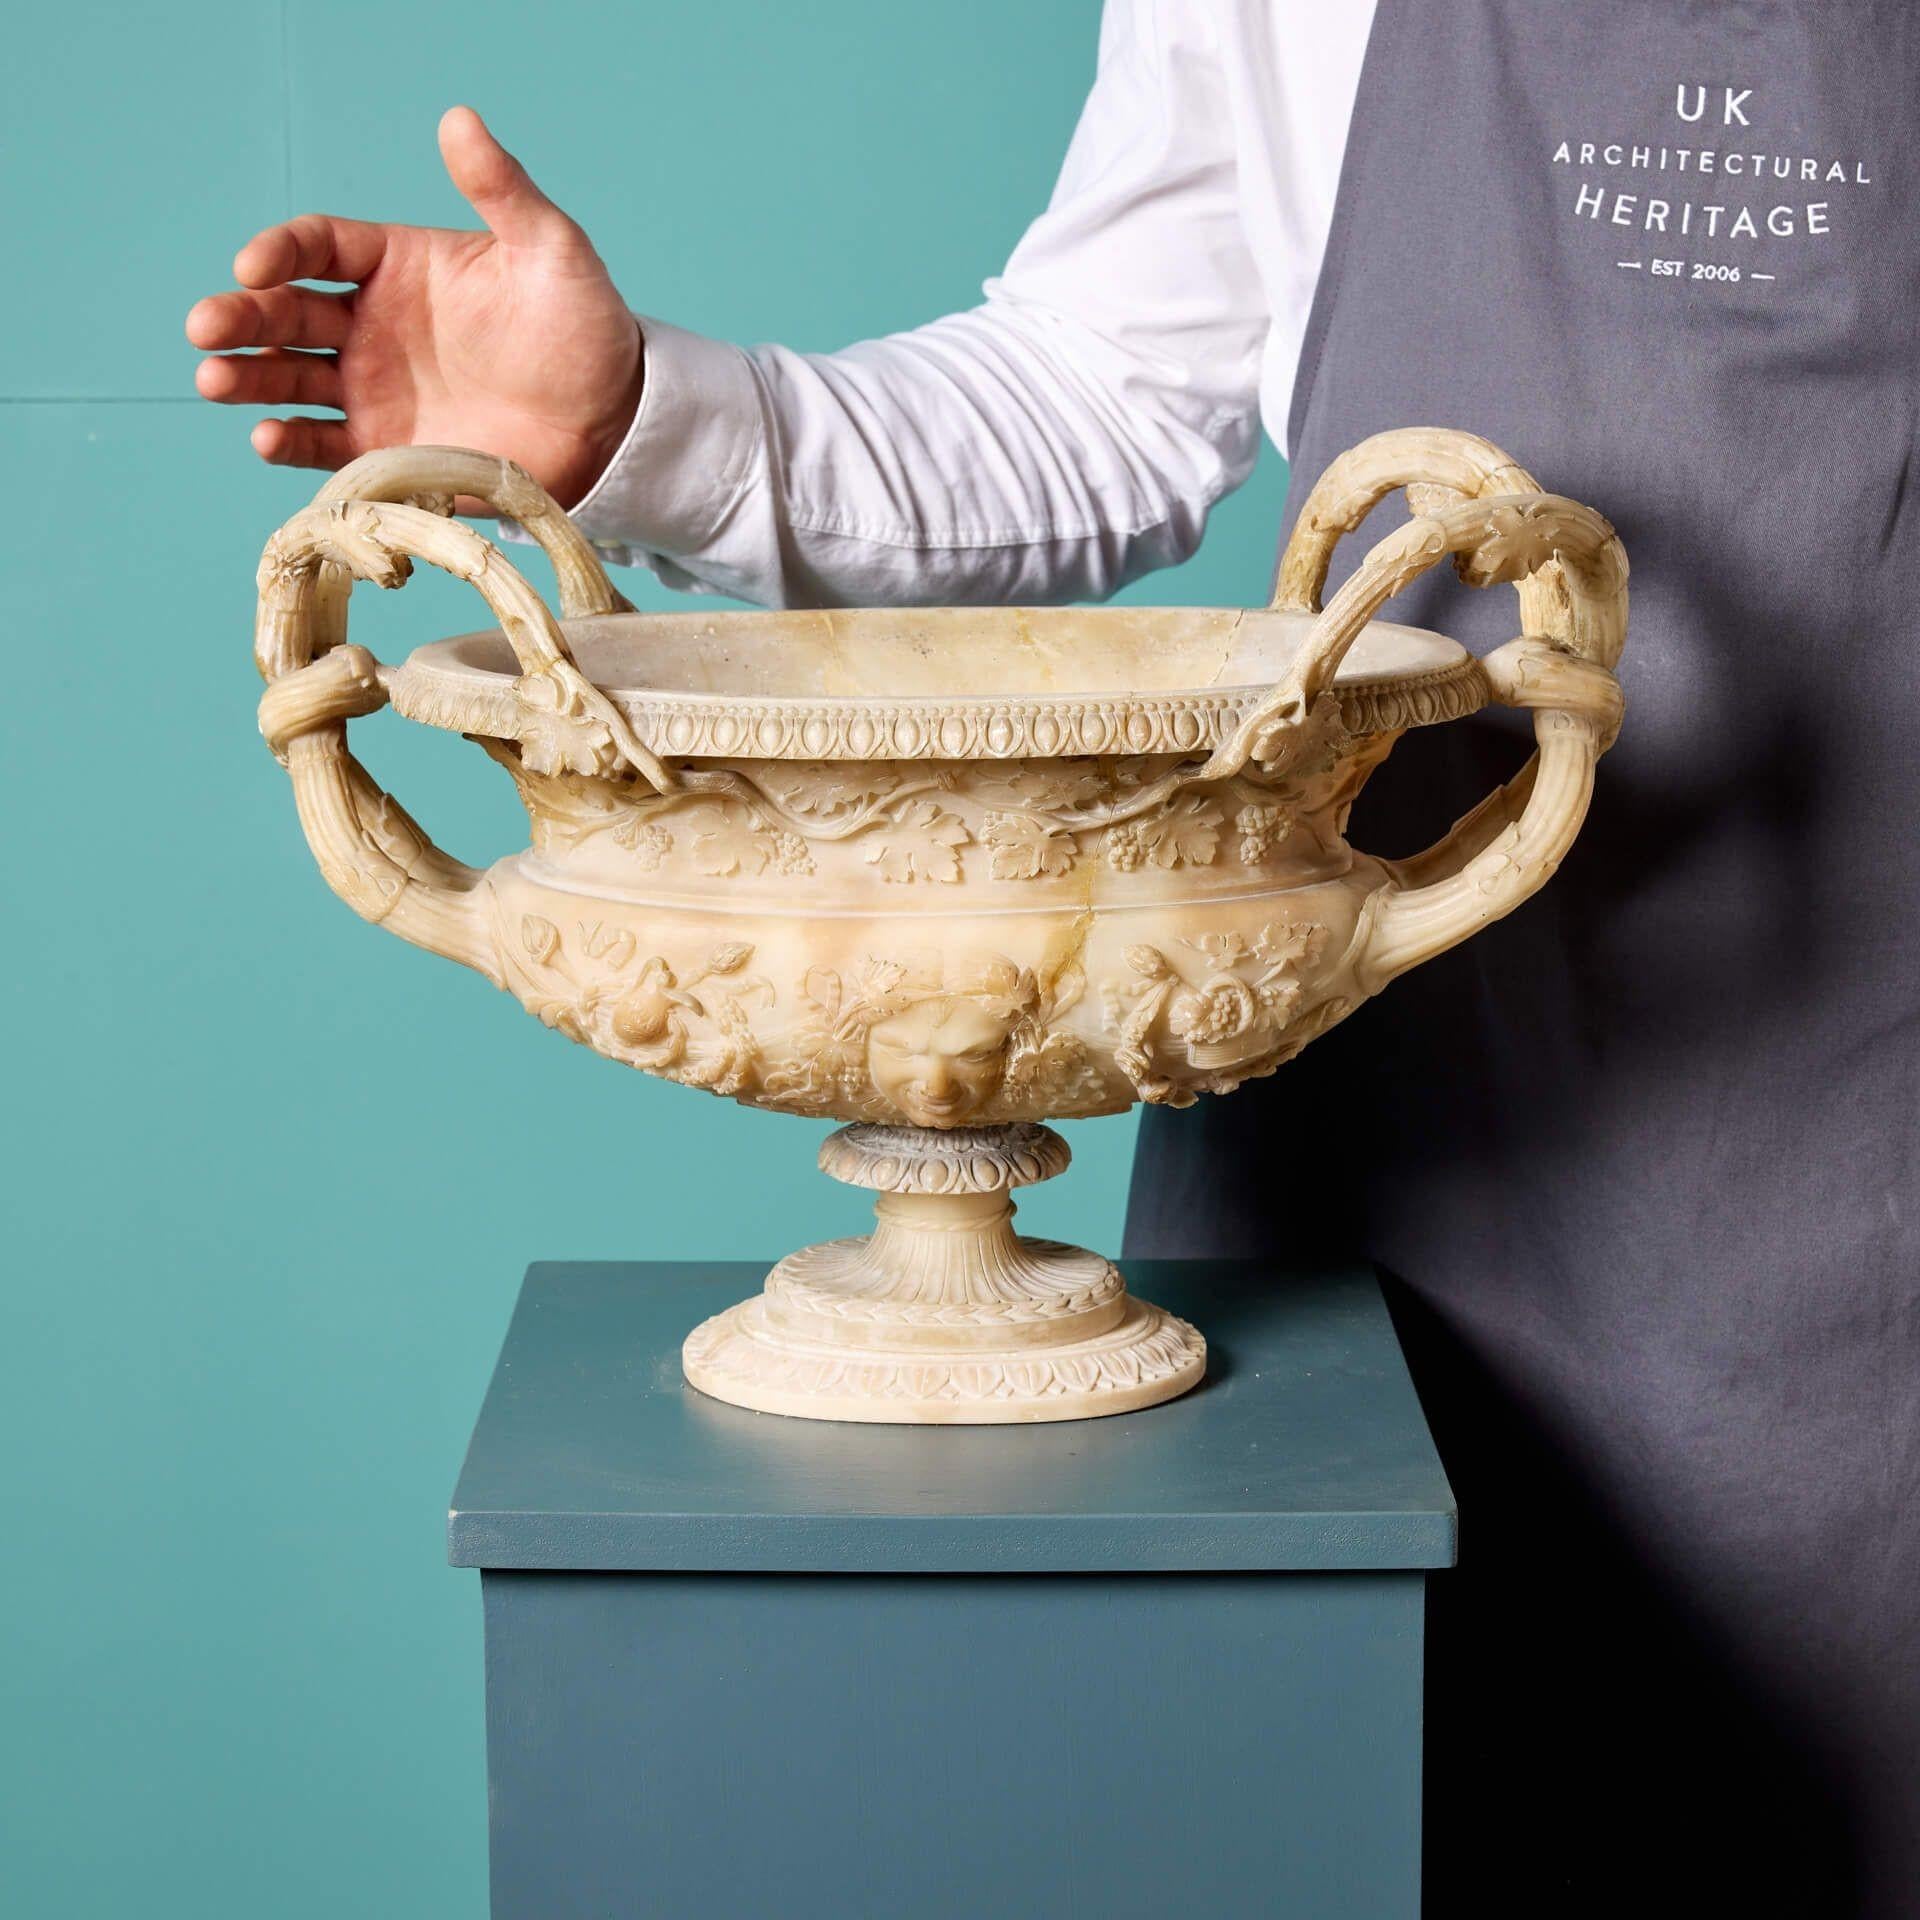 Un vase ou une urne en albâtre italien ancien, sculpté de façon exquise, vers 1860. Les détails de cette magnifique urne offrent un aperçu des styles de l'Italie du XIXe siècle. Le corps est finement sculpté avec des masques et des feuillages de